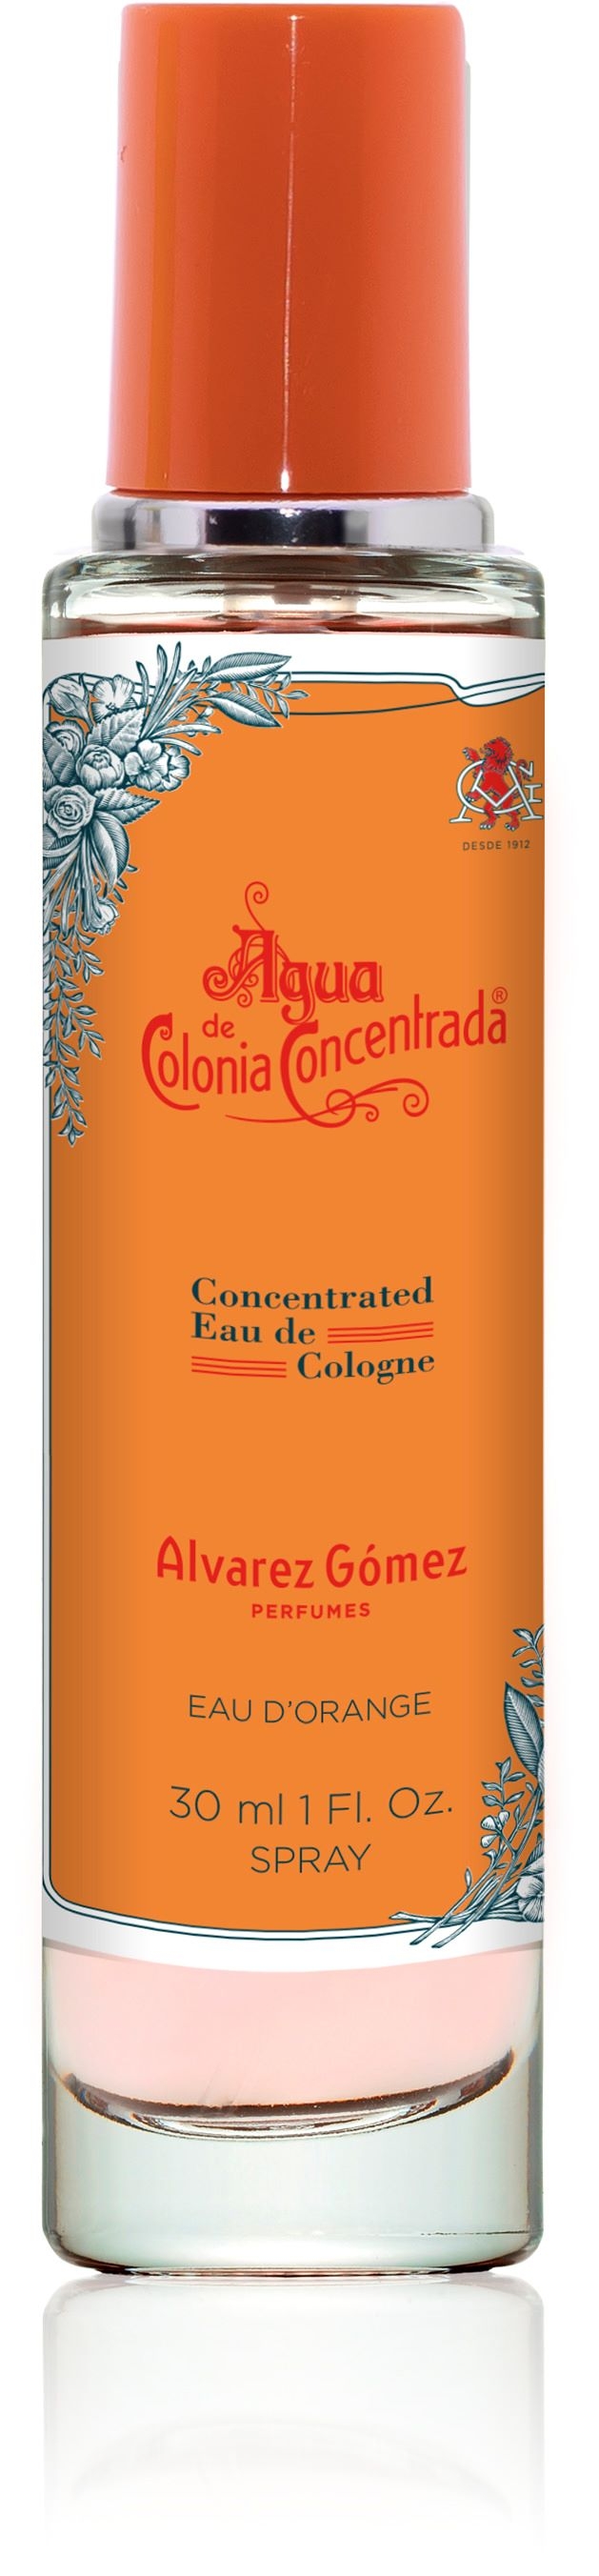 Colonia de Agua D'Orange Alvarez Gómez 30 ml